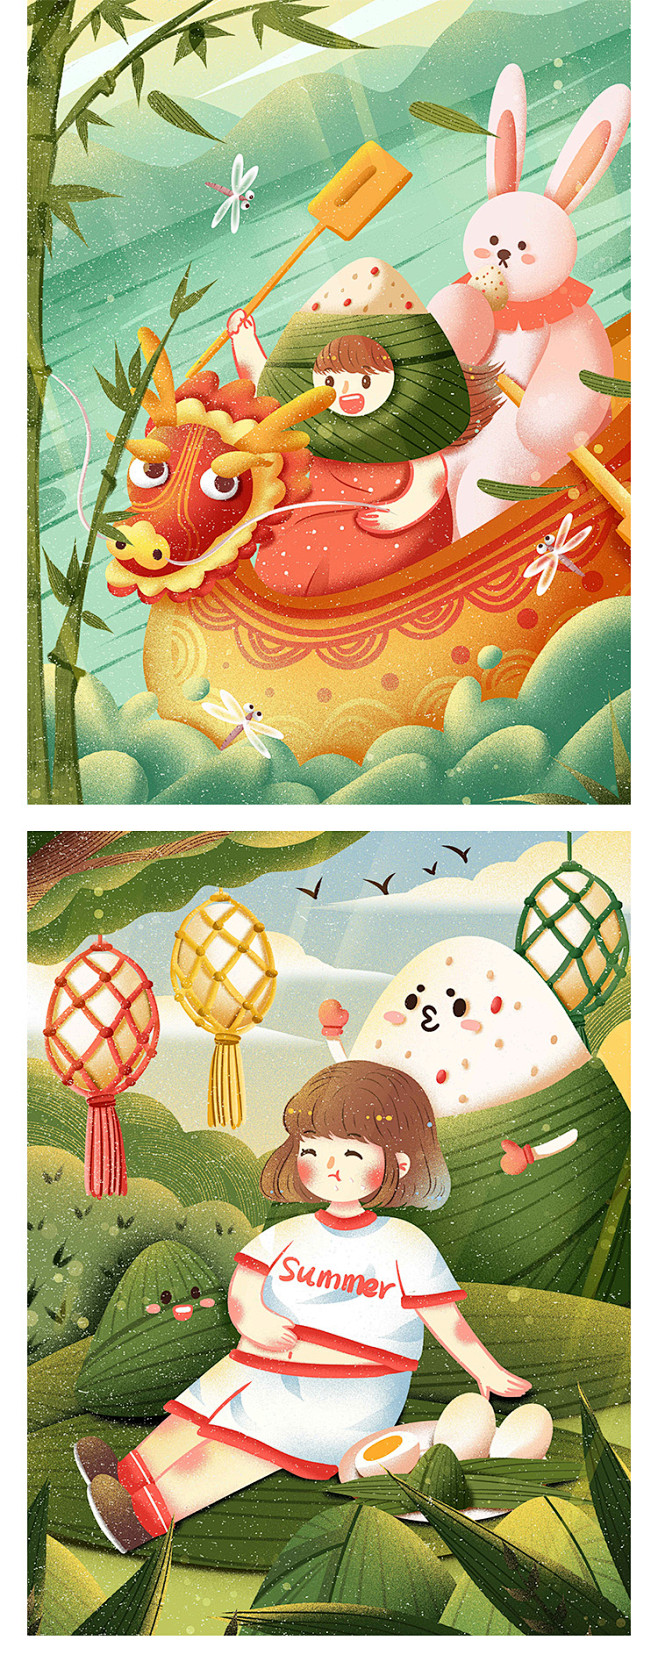 中国传统节日端午节粽子节趣味插画风格宣传...